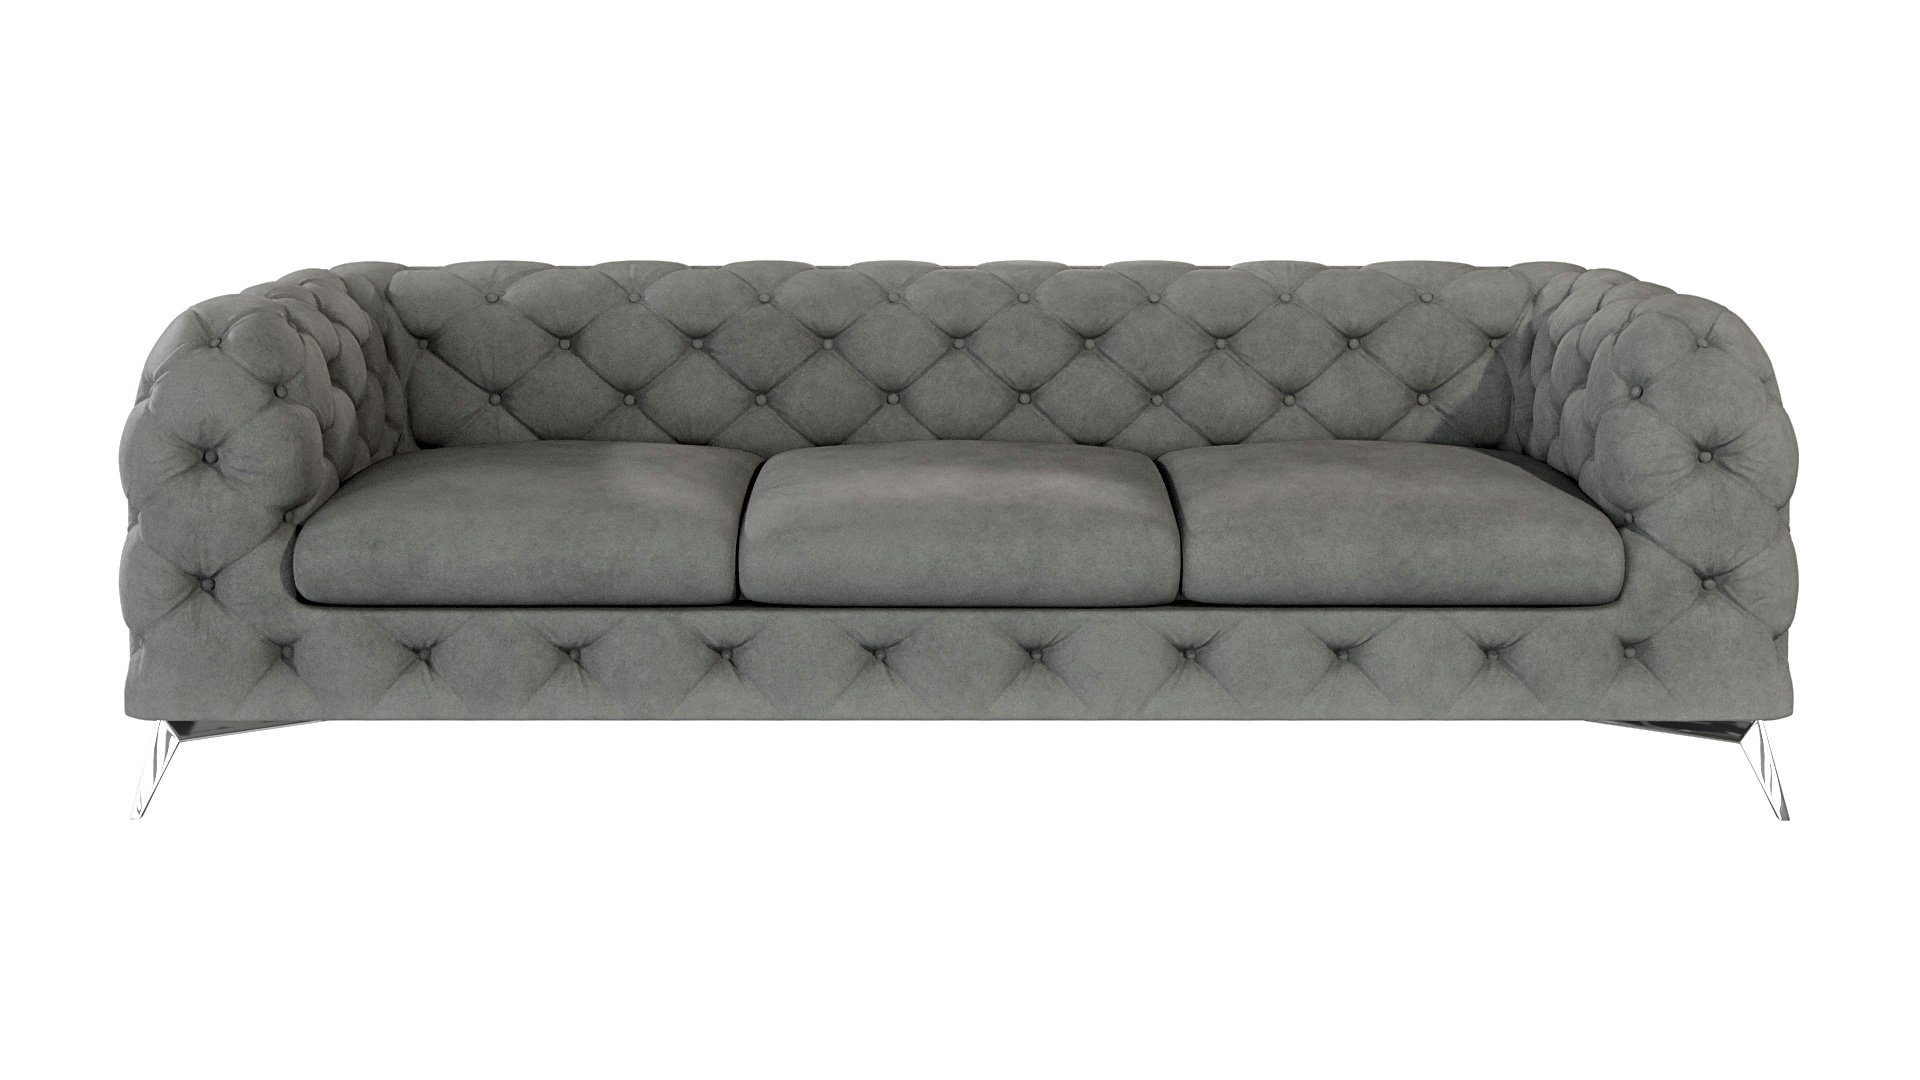 Wellenfederung Chesterfield Metall mit mit Kalina Silber 3-Sitzer S-Style Möbel Grau Sofa Füßen,